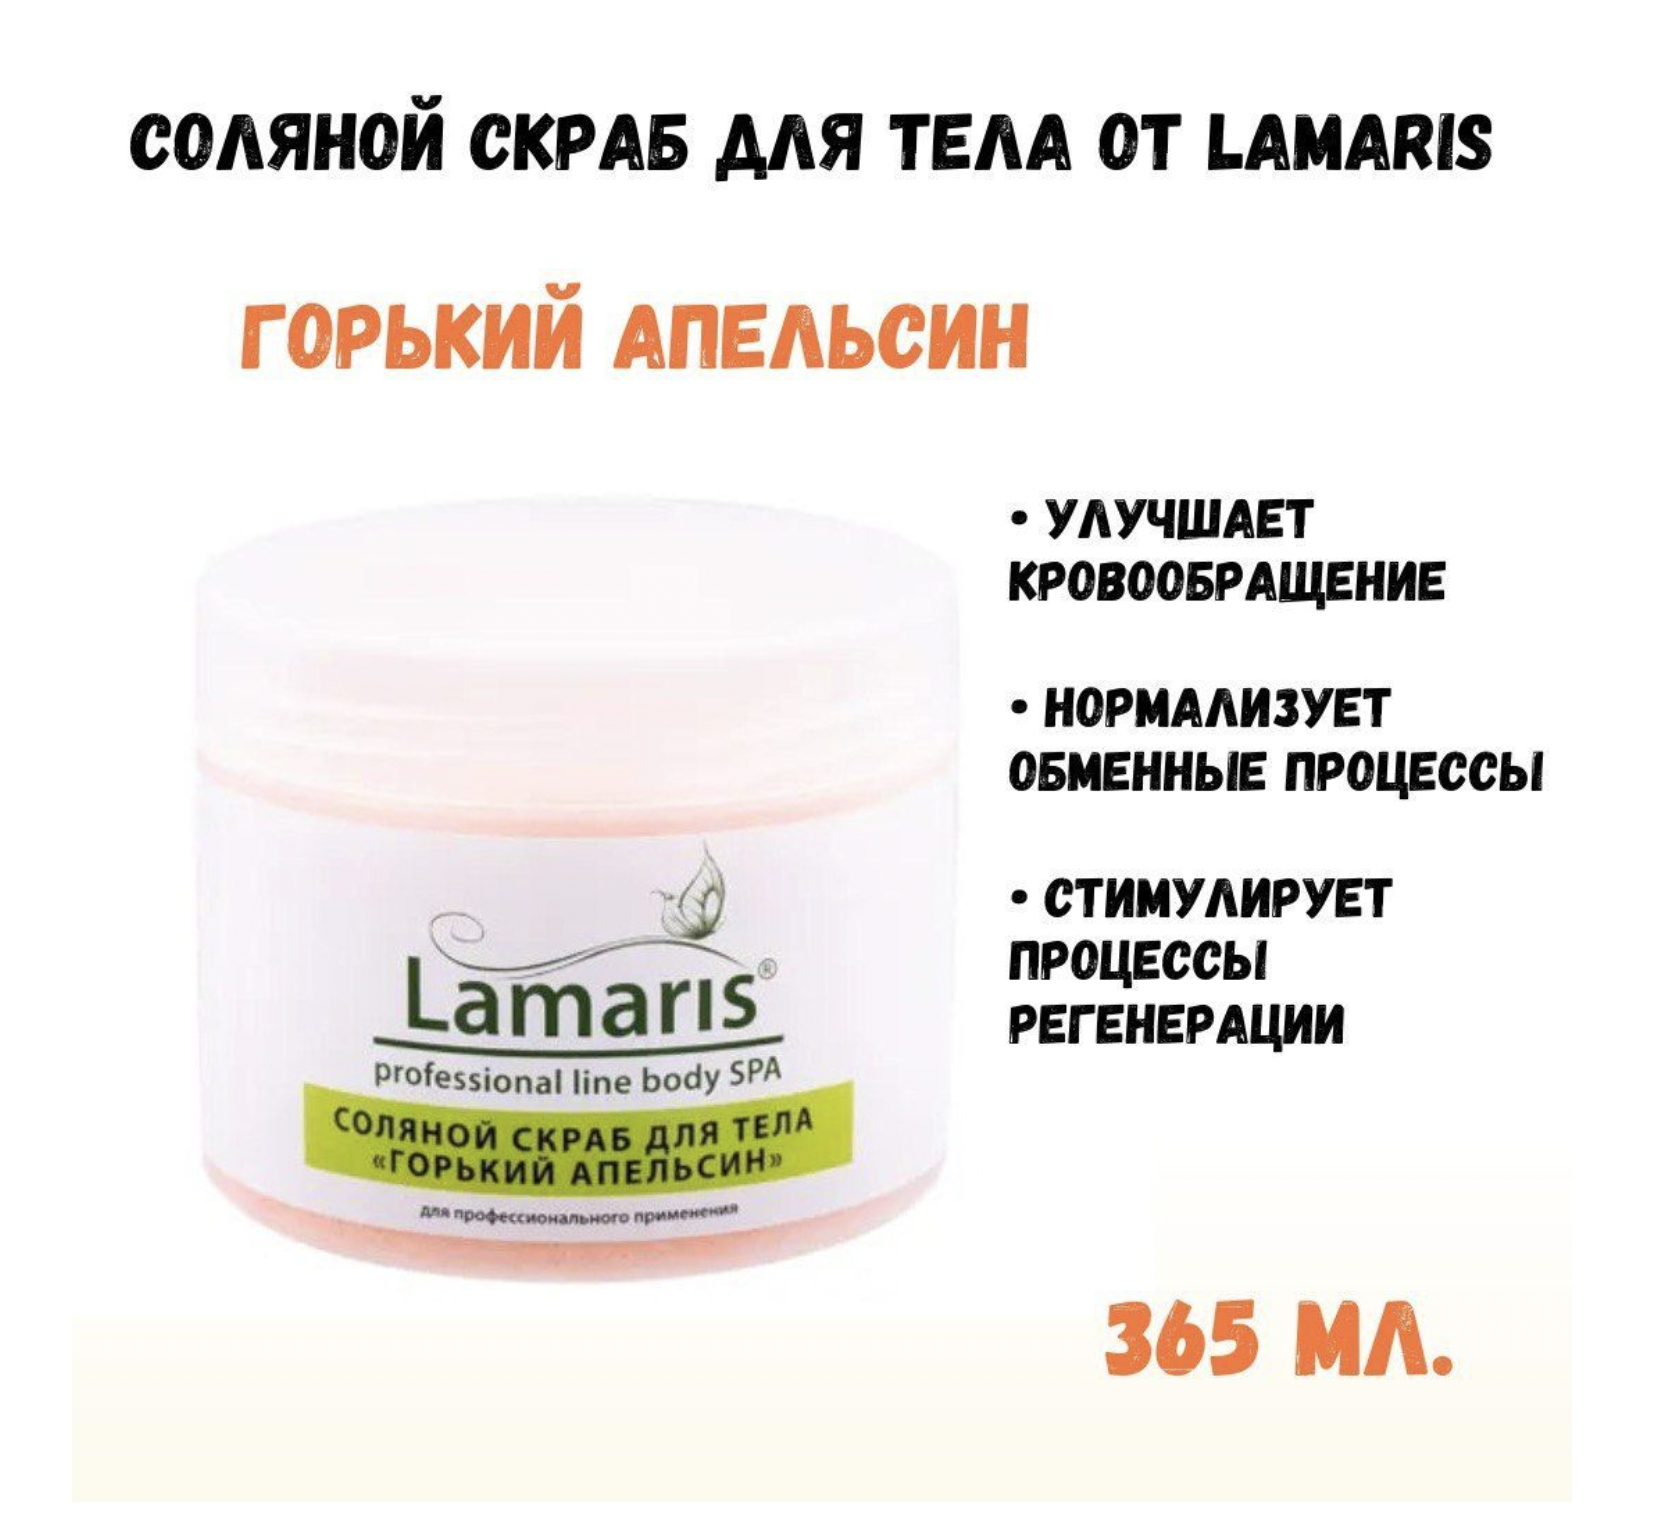 Скраб Lamaris натуральный антицеллюлитный соляной для тела горький апельсин 365 г скраб lamaris натуральный антицеллюлитный соляной для тела горький апельсин 365 г